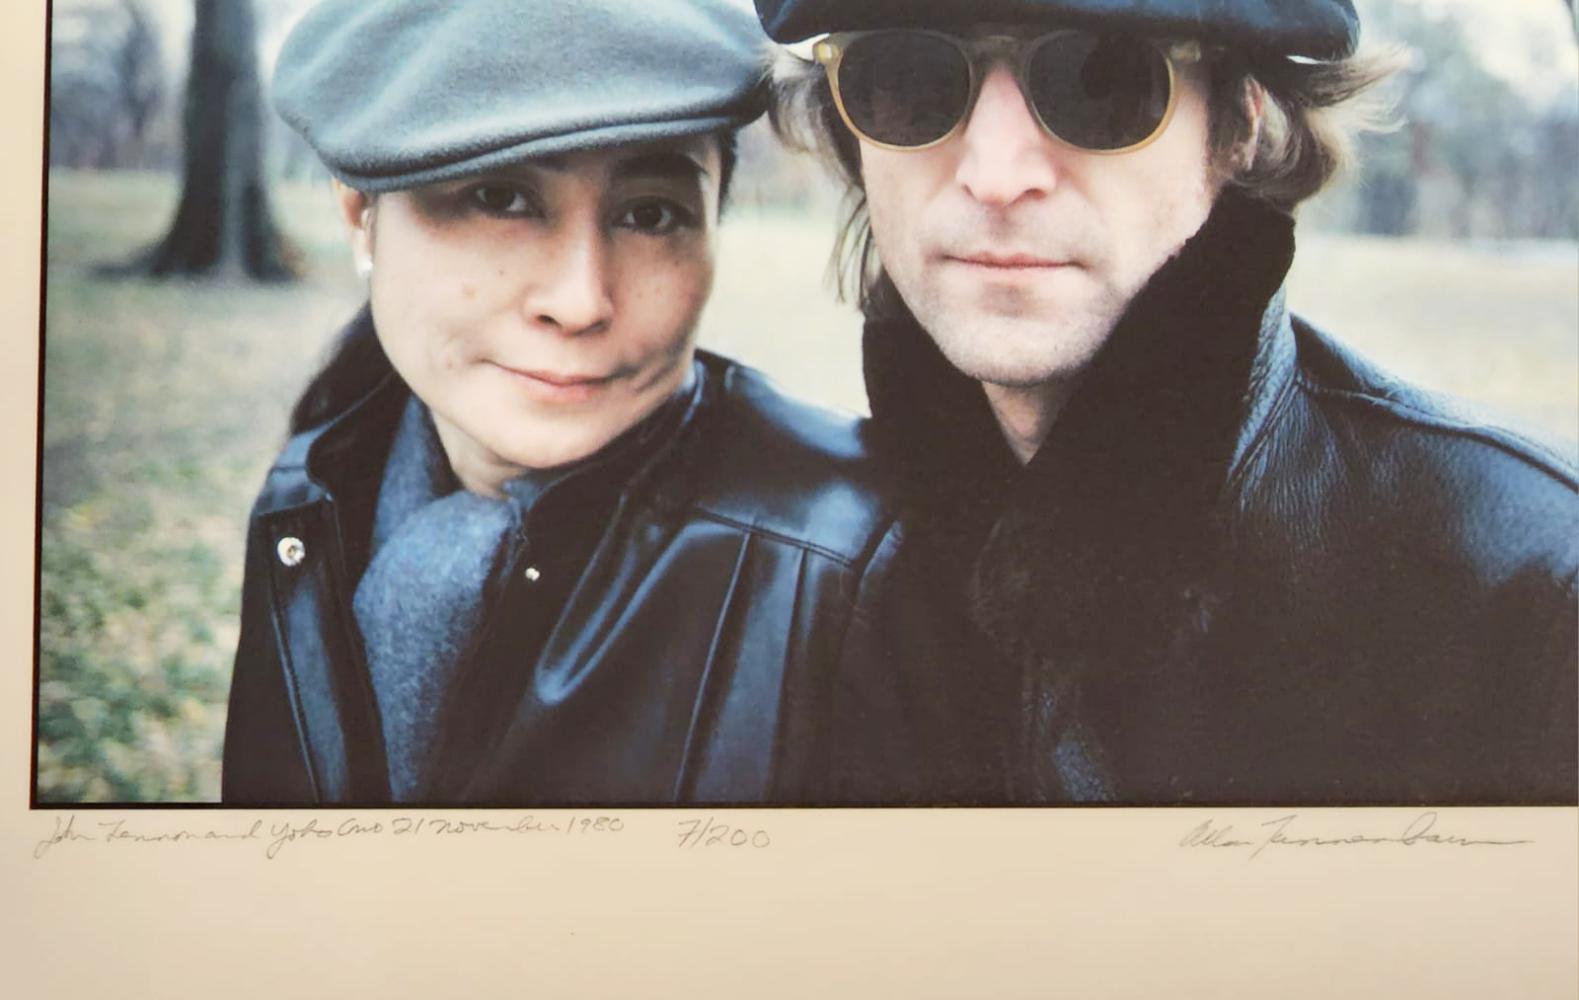 John Lennon & Yoko Ono, Central Park, 1980 - Photograph by Allan Tannenbaum